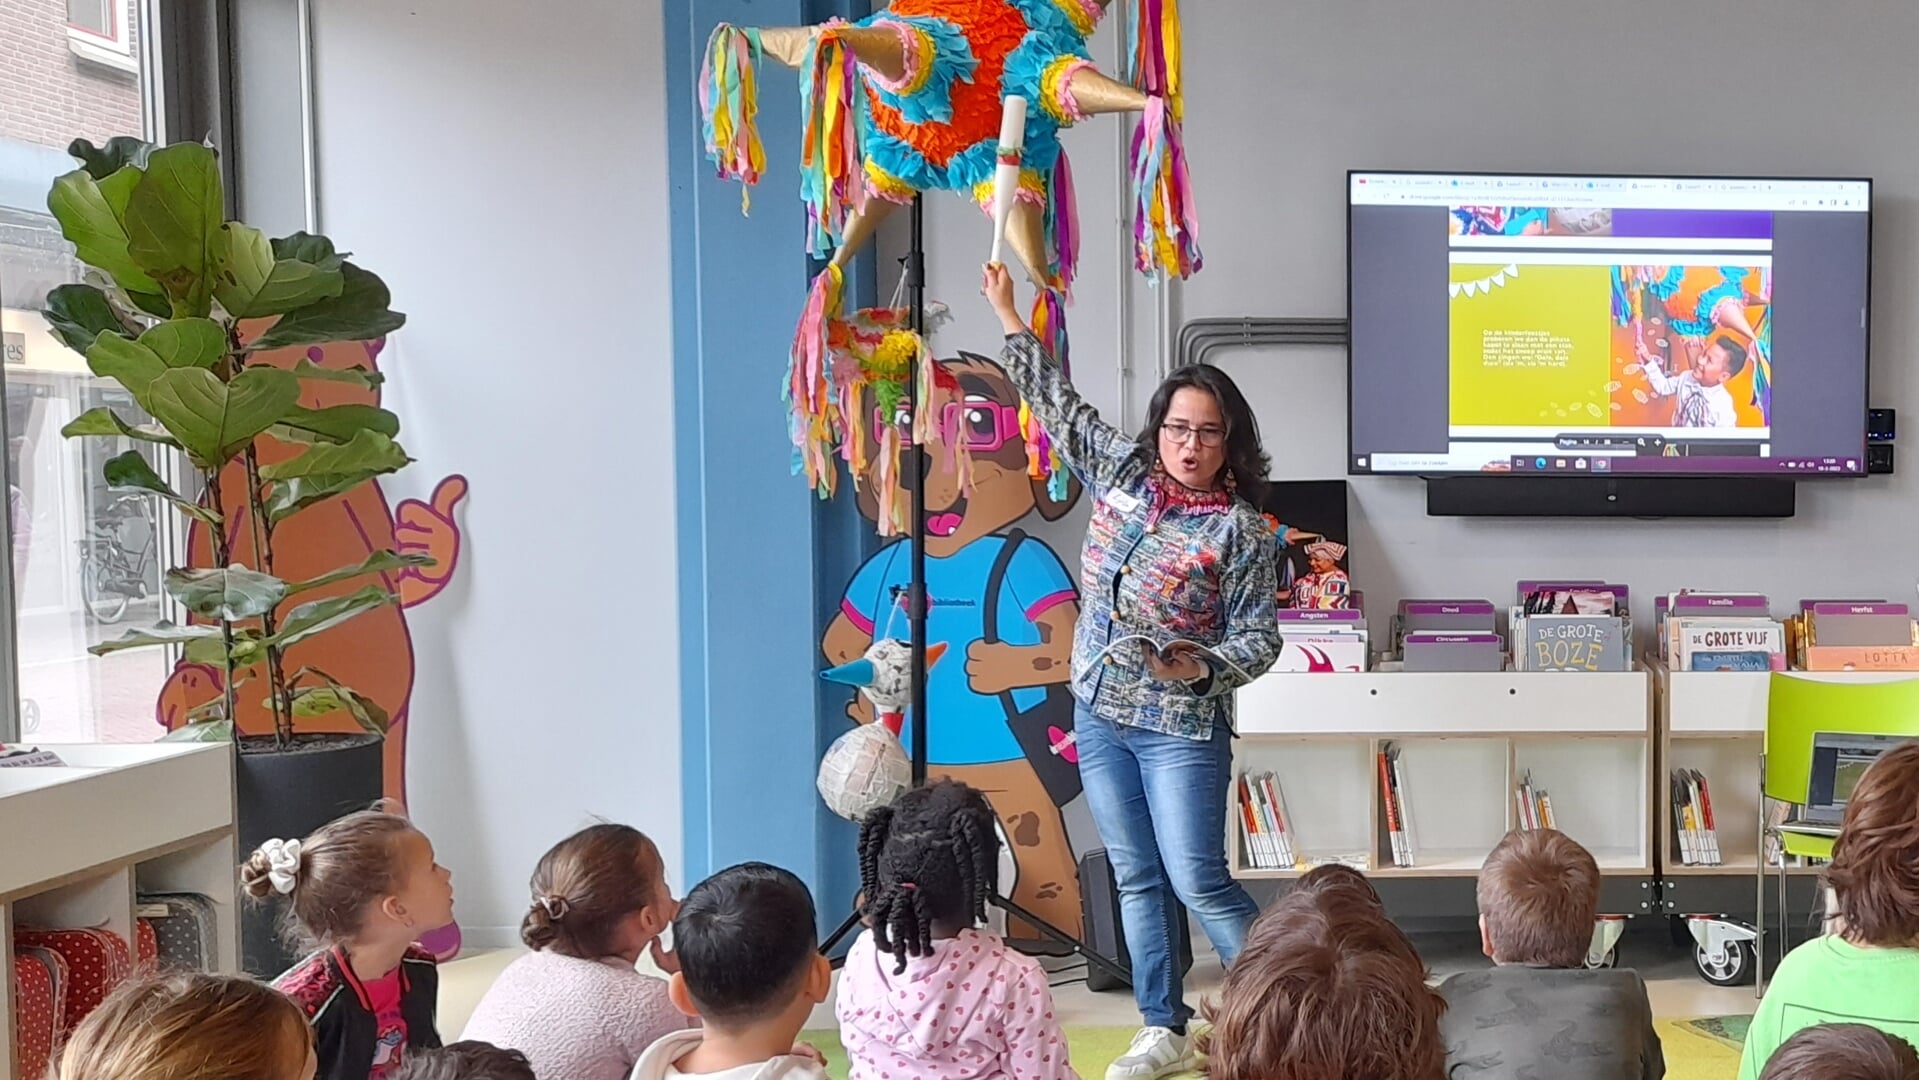 Lyla vertelde tijdens haar boekpresentatie alles over de herkomst en betekenis van de piñata. (Foto: Almere DEZE WEEK)